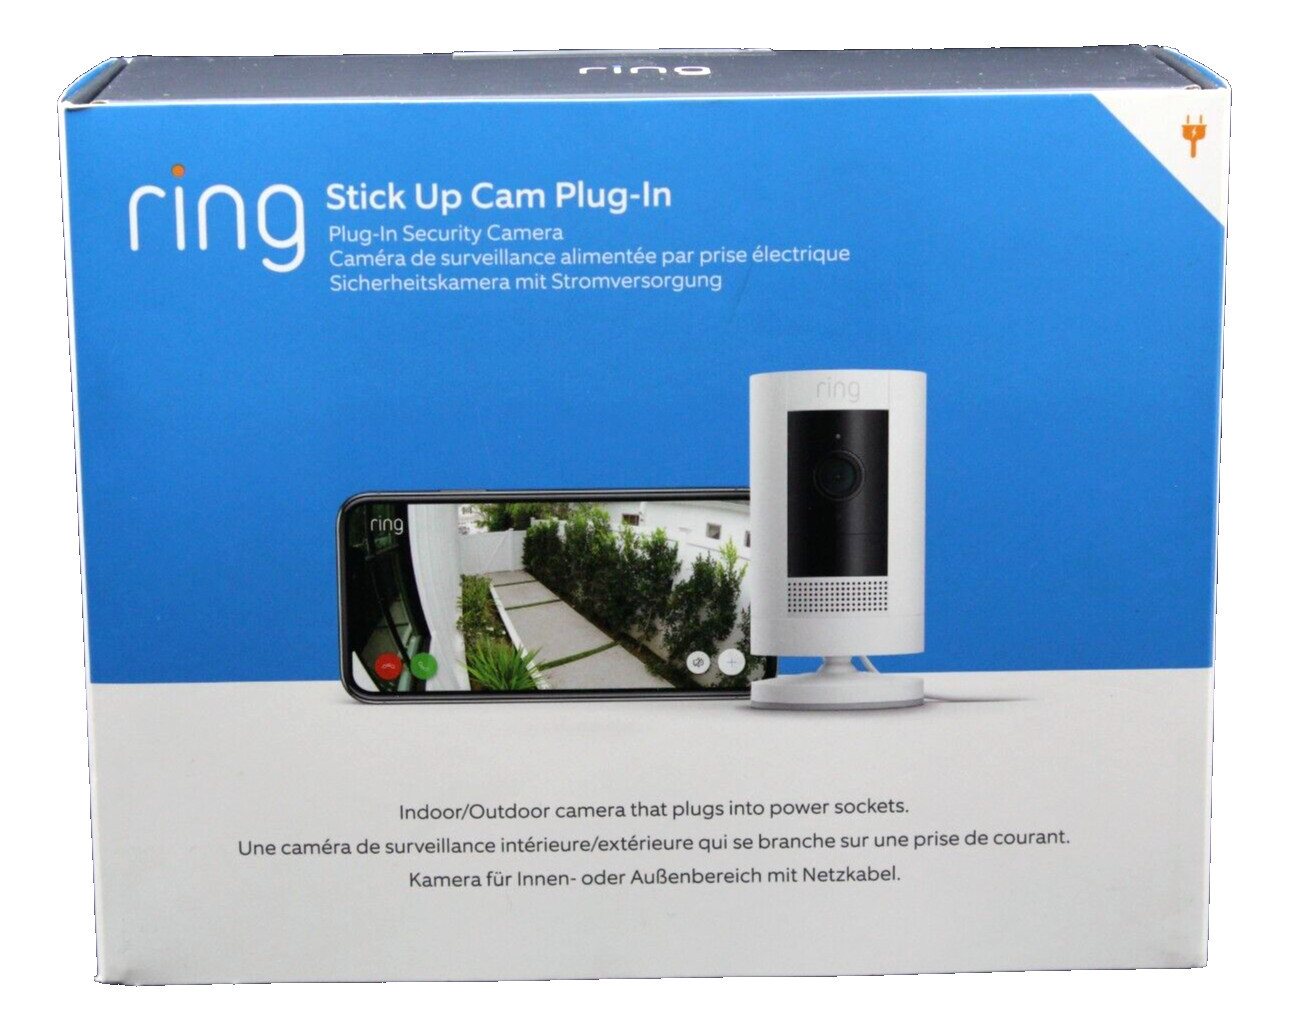 Ring Stick Up Cam Plug-in WLAN Kamera Weiss Netzkabel Alexa Überwachungskamera (Außenbereich, Innenbereich, Bewegungserkennung Nur-Personen-Modus, 1080p Video mit Nachtsicht) von Ring